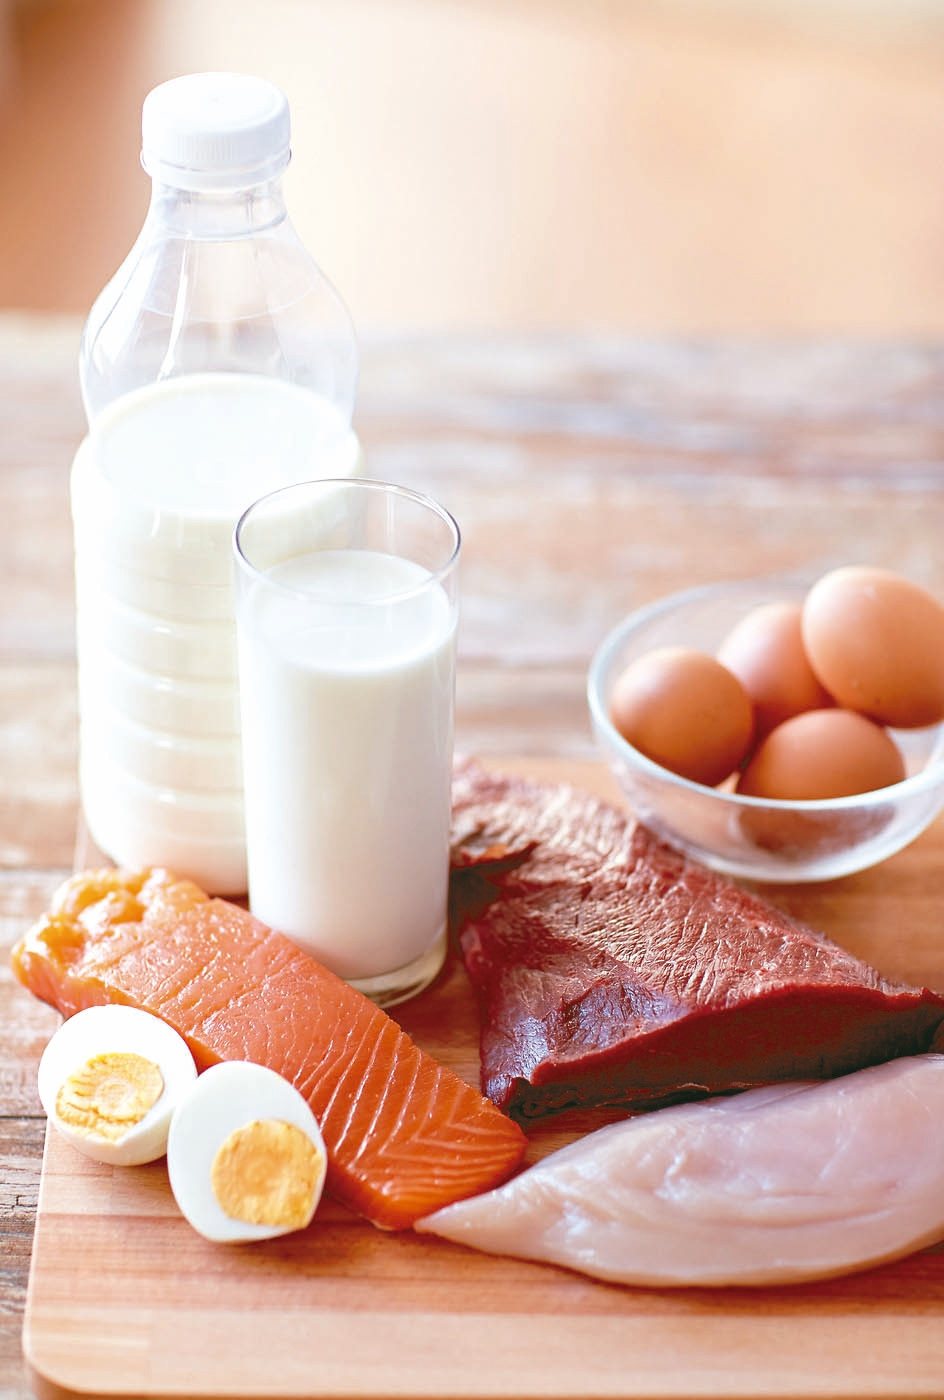 每天至少喝一杯豆漿、牛奶及一顆茶葉蛋，才能補足蛋白質、礦物質及維生素。